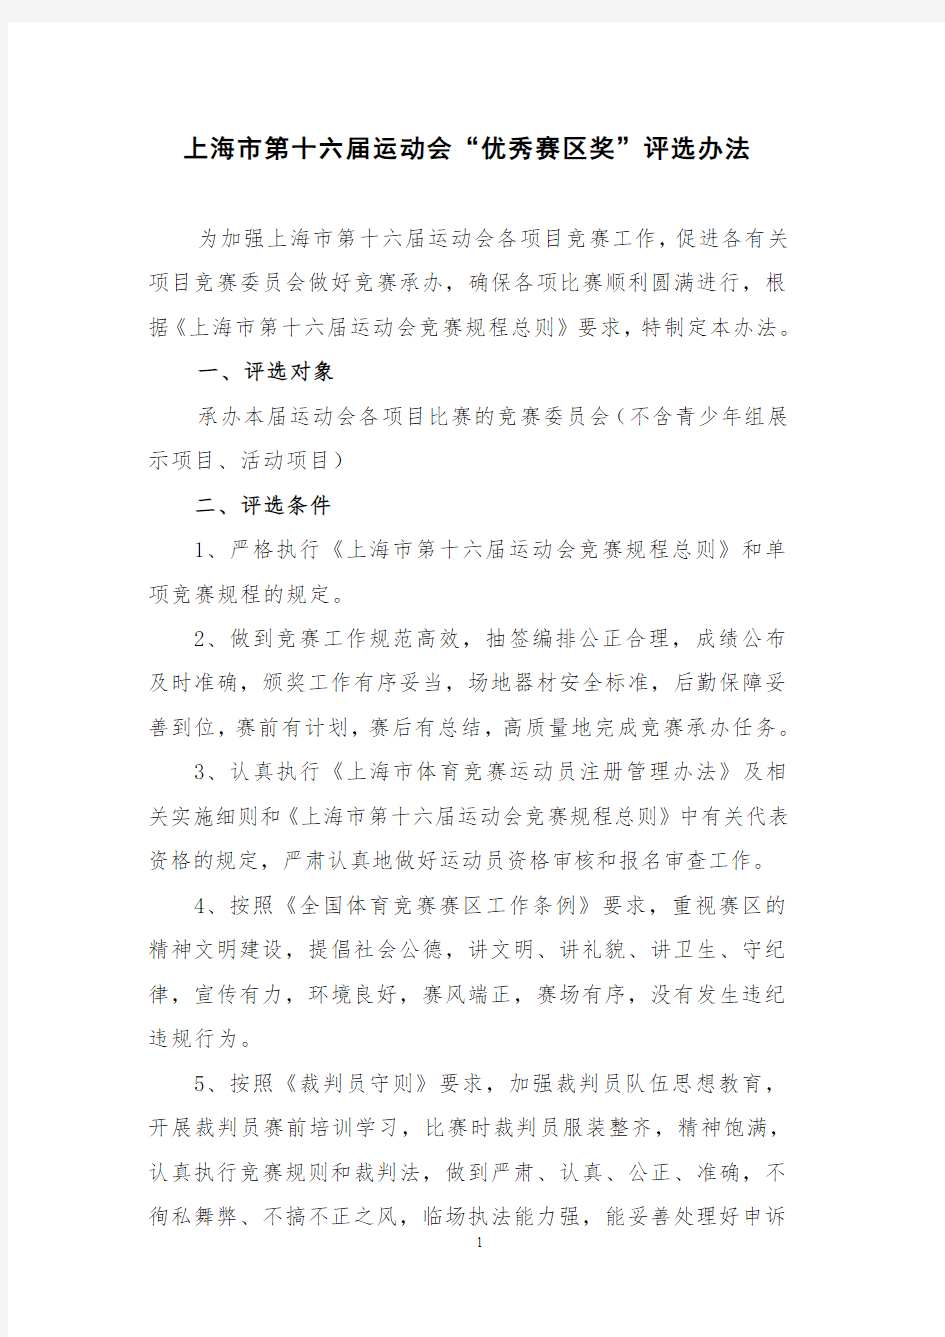 上海第十六届运动会优秀赛区奖评选办法